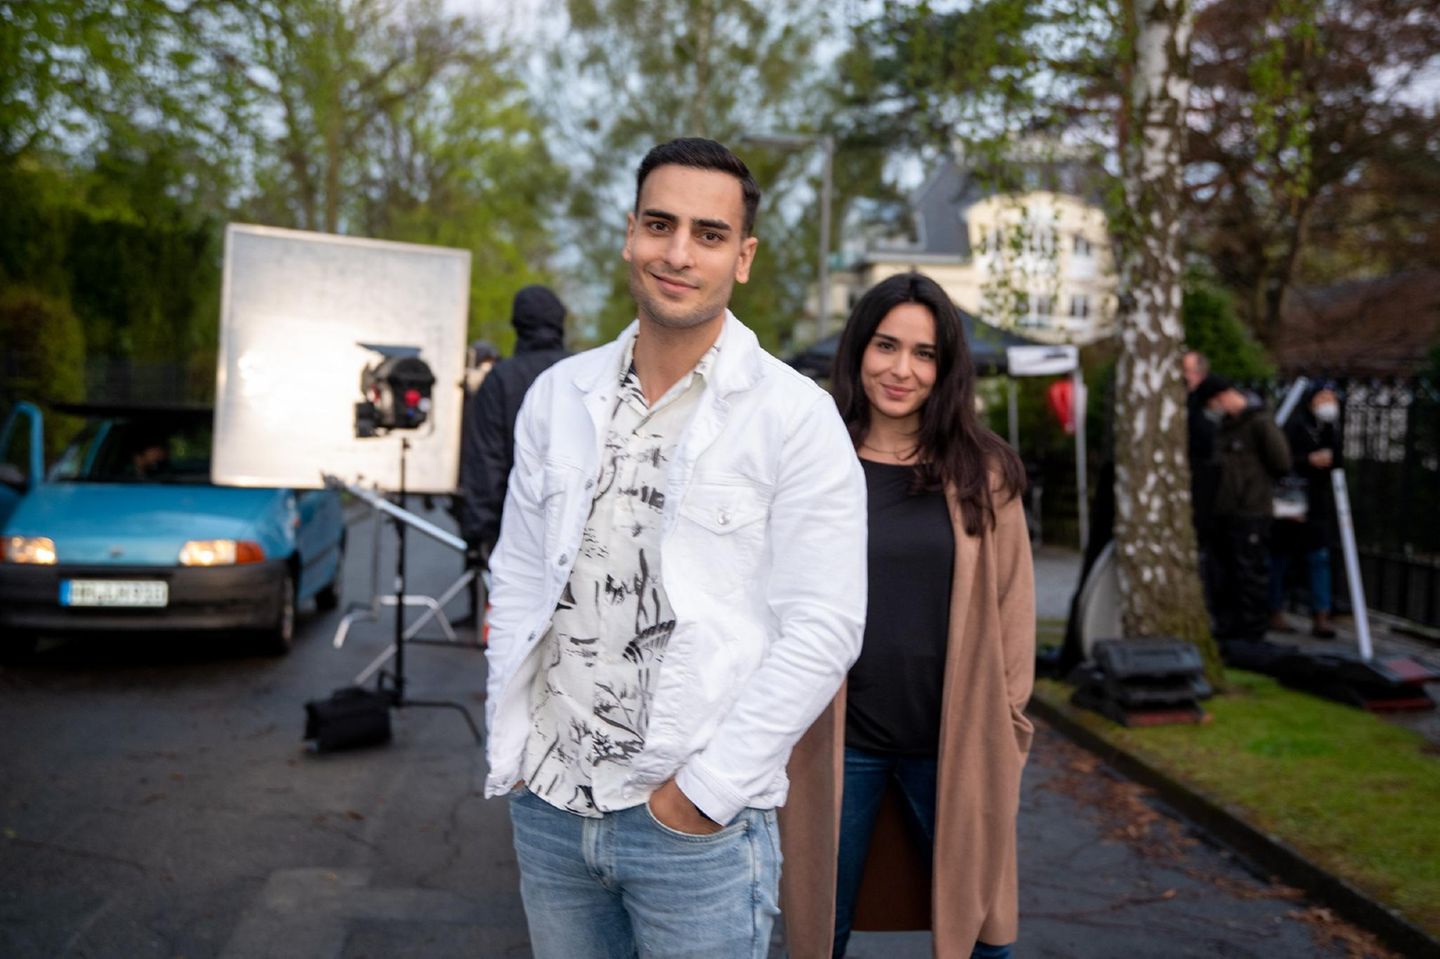 GZSZ-Stars Timur Ülker und Gamze Senol stehen für "Nihat – Alles auf Angang" wieder gemeinsam vor der Kamera